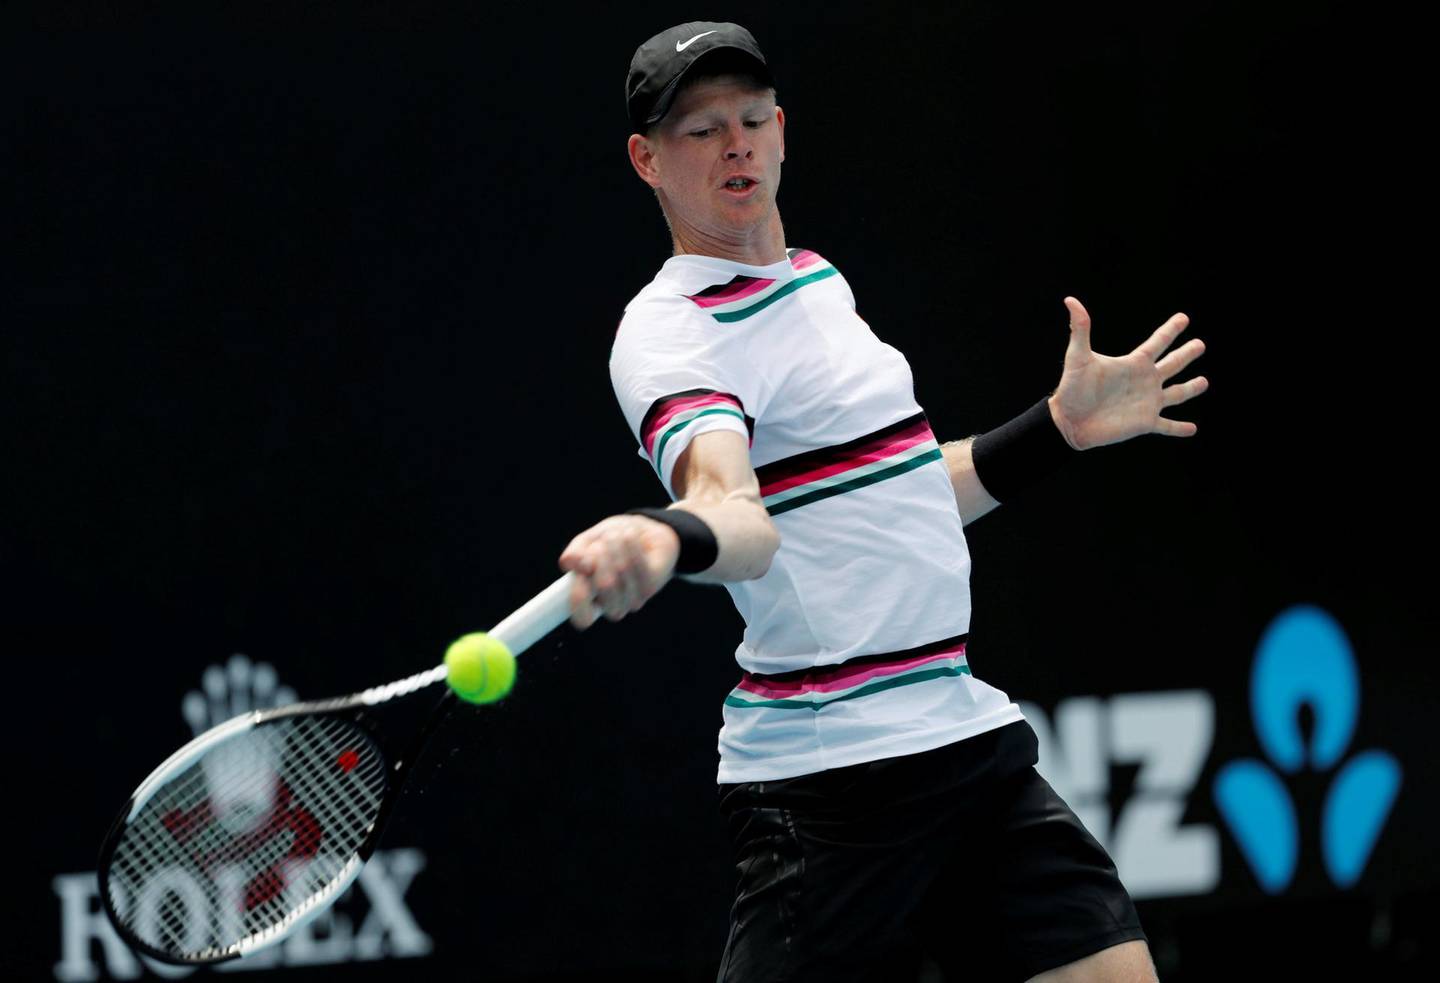 Tennis - Australian Open - Melbourne Park, Melbourne, Australia - January 12, 2019 - Kyle Edmund of Britain at practice.   REUTERS/Kim Kyung-Hoon